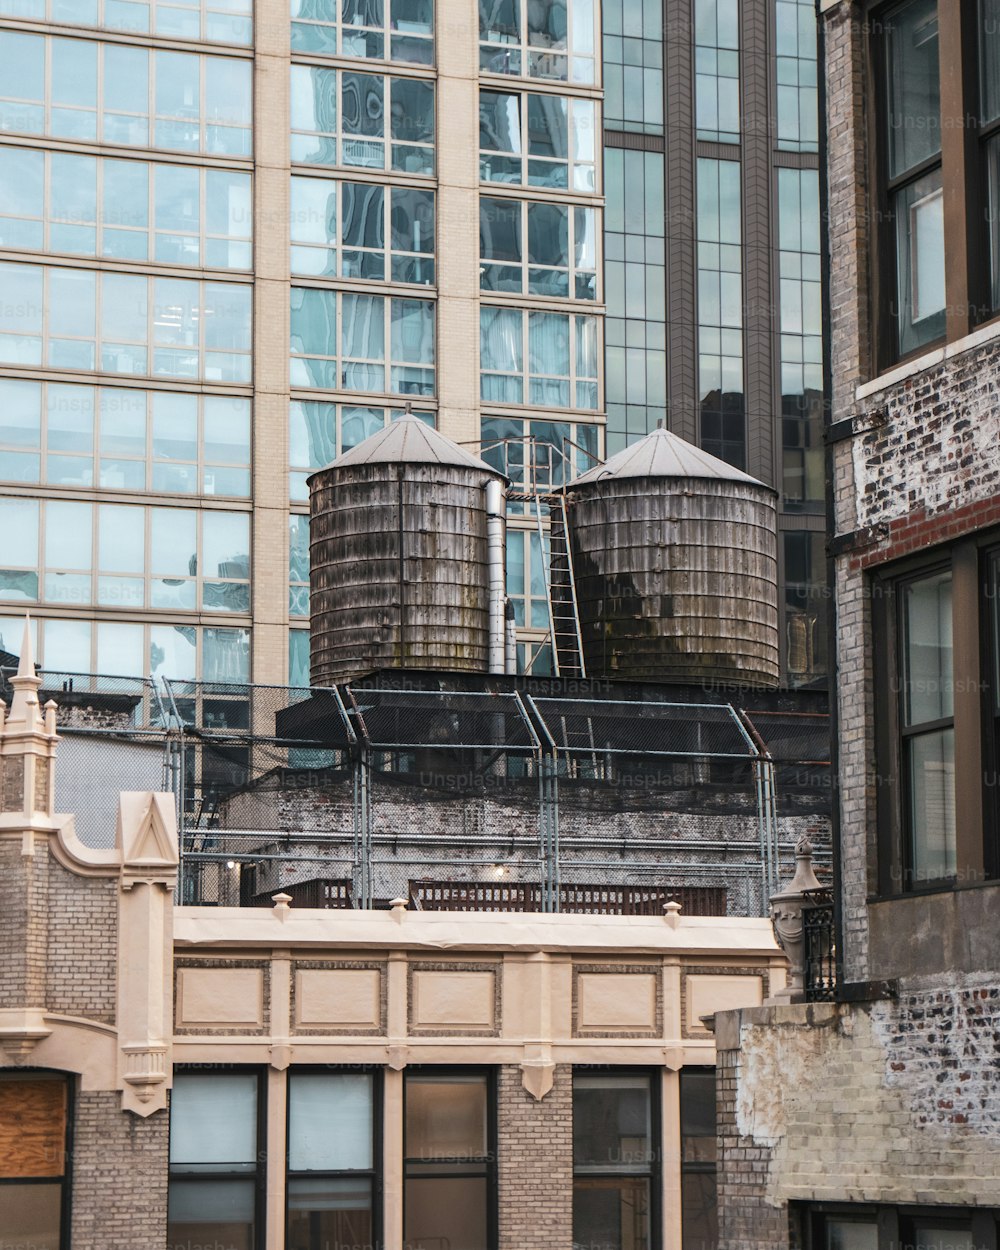 Un par de tanques de agua sentados en la parte superior de un edificio